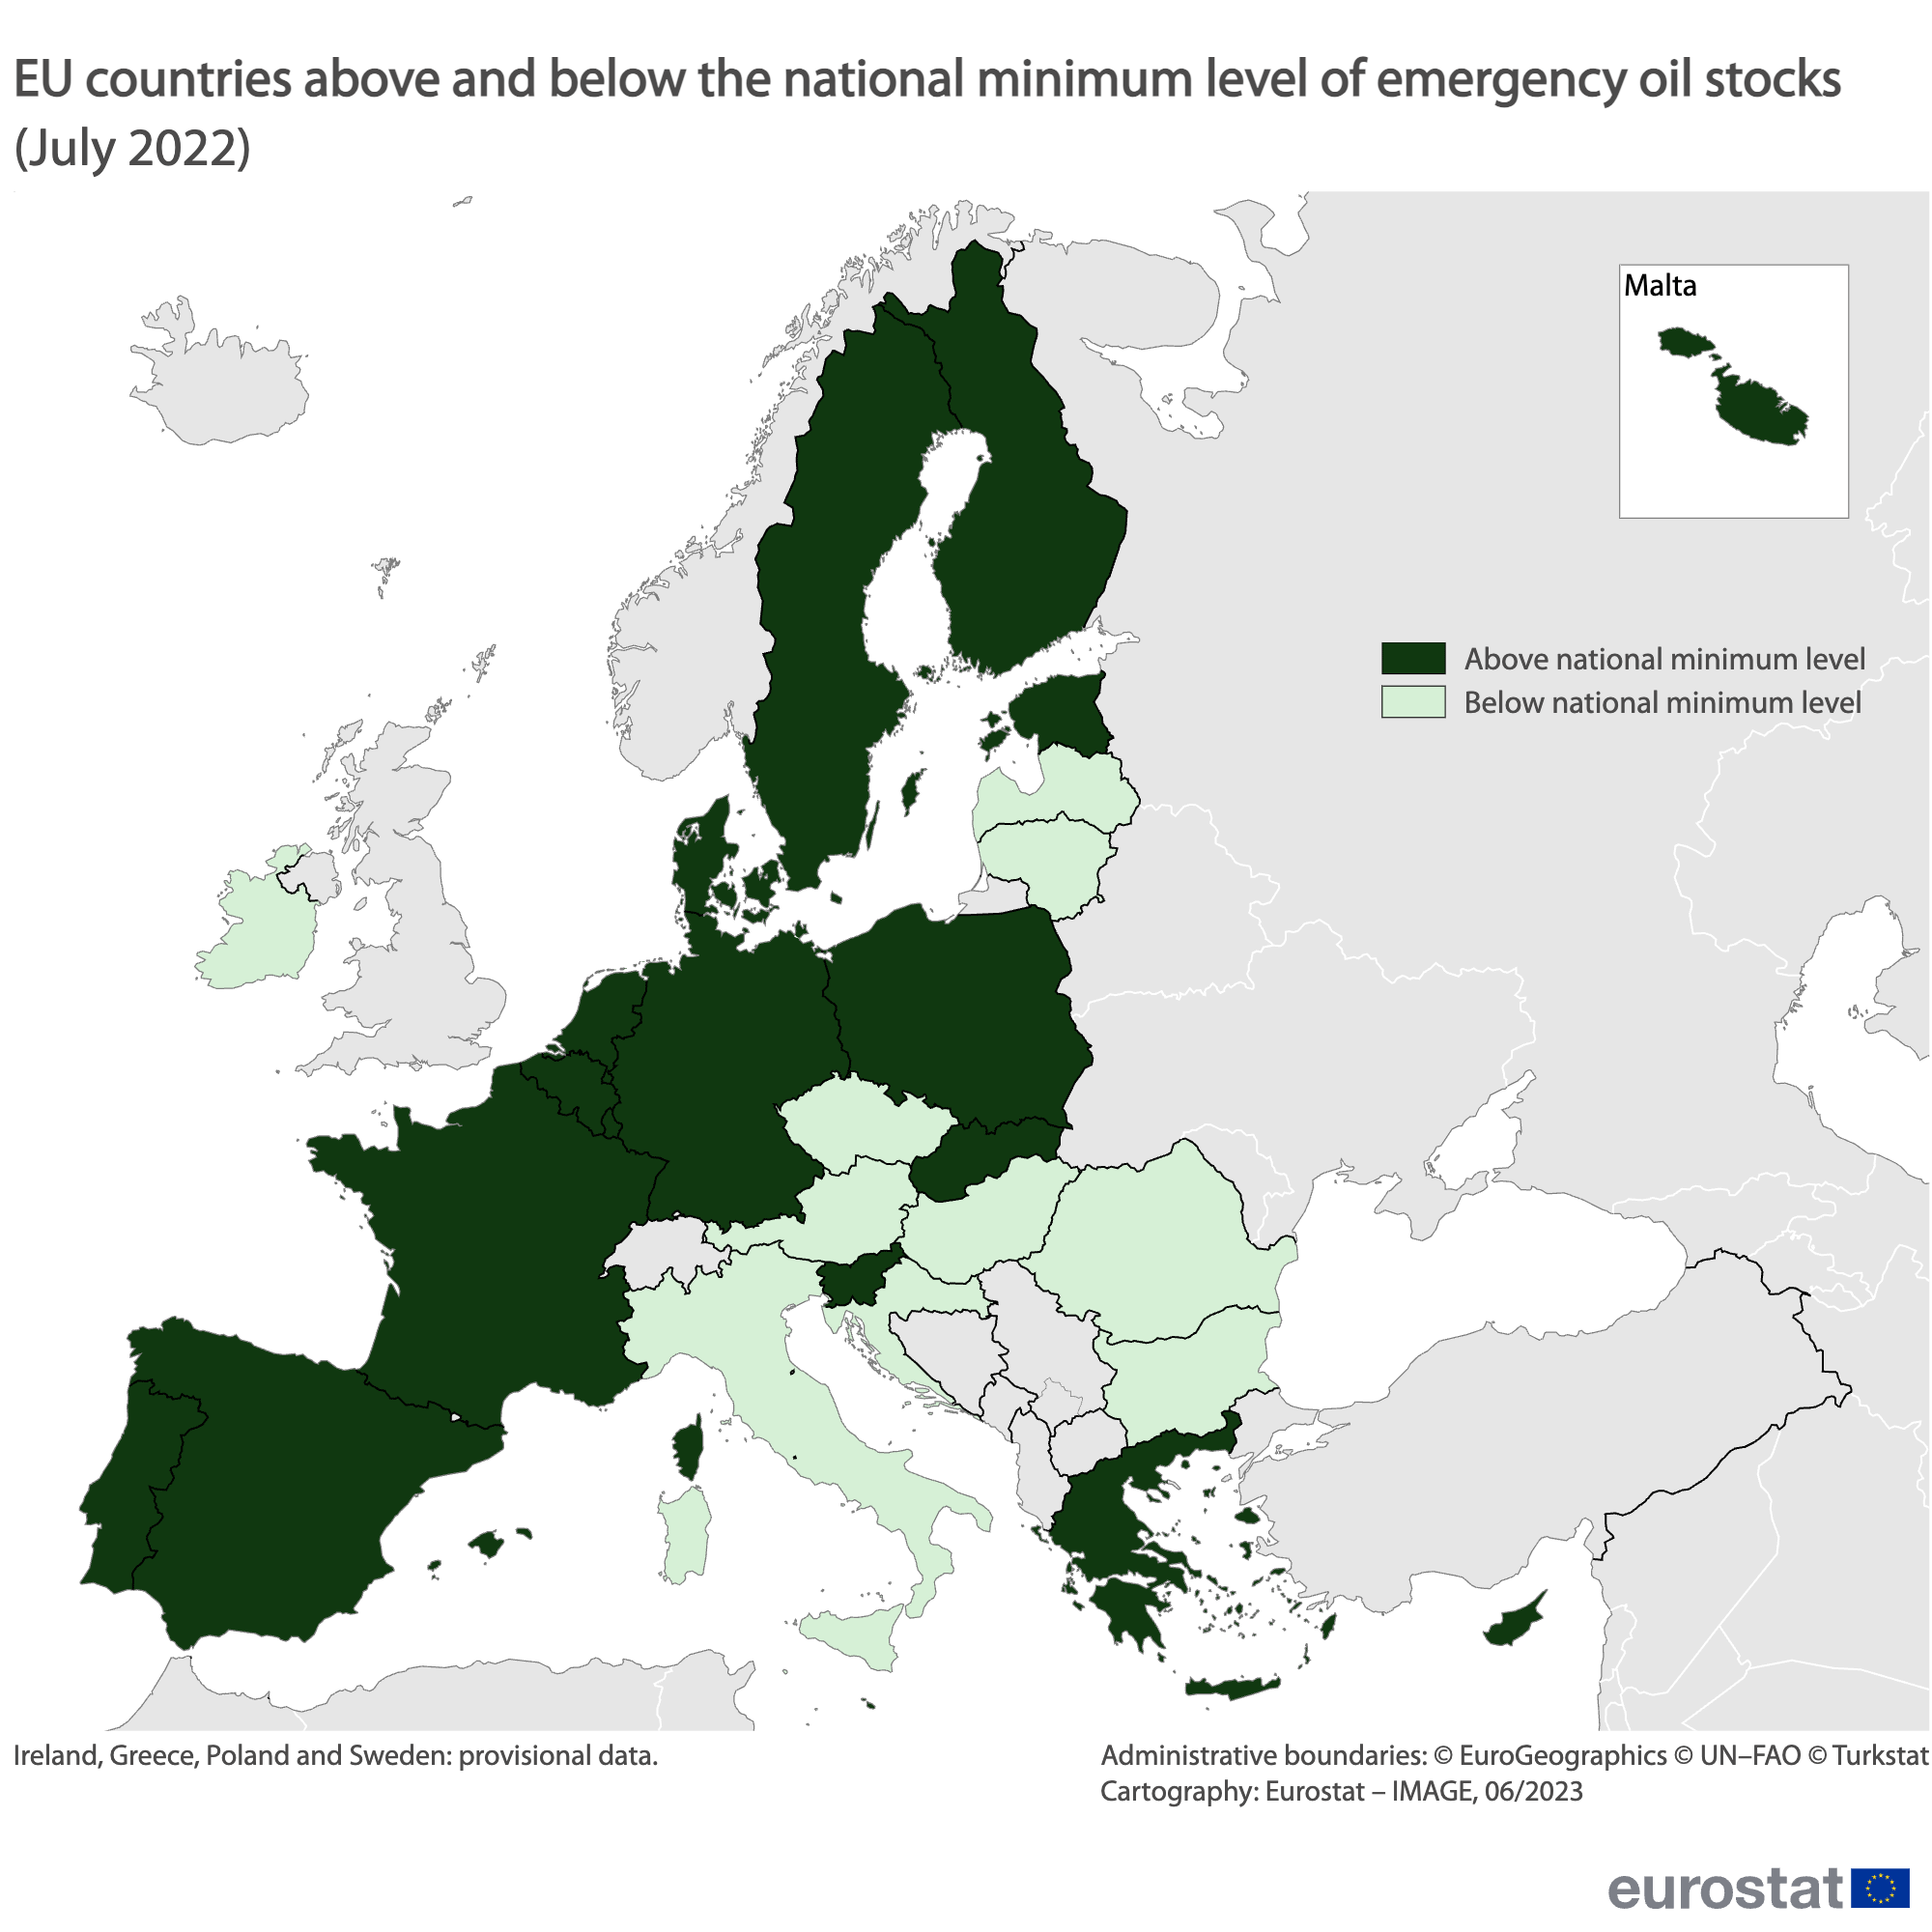 GIF χαρτών: χώρες της ΕΕ πάνω και κάτω από το εθνικό ελάχιστο επίπεδο αποθεμάτων πετρελαίου έκτακτης ανάγκης τον Ιούλιο του 2022 και τον Μάρτιο του 2023